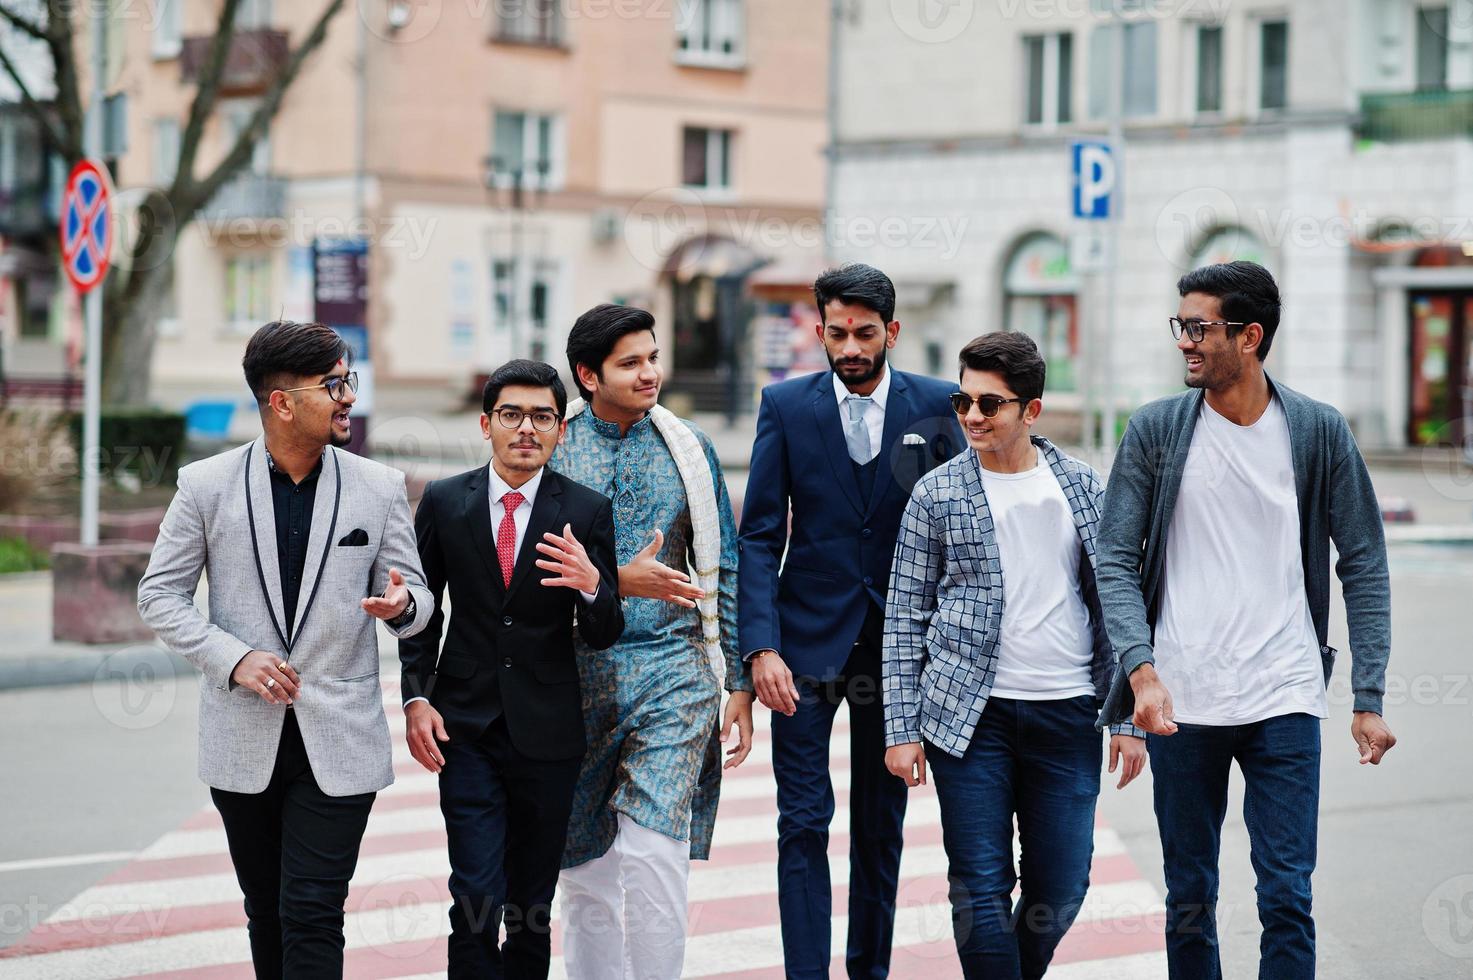 grupo de seis indios del sur de asia vestidos con ropa tradicional, informal y de negocios caminando juntos en el cruce de peatones. foto